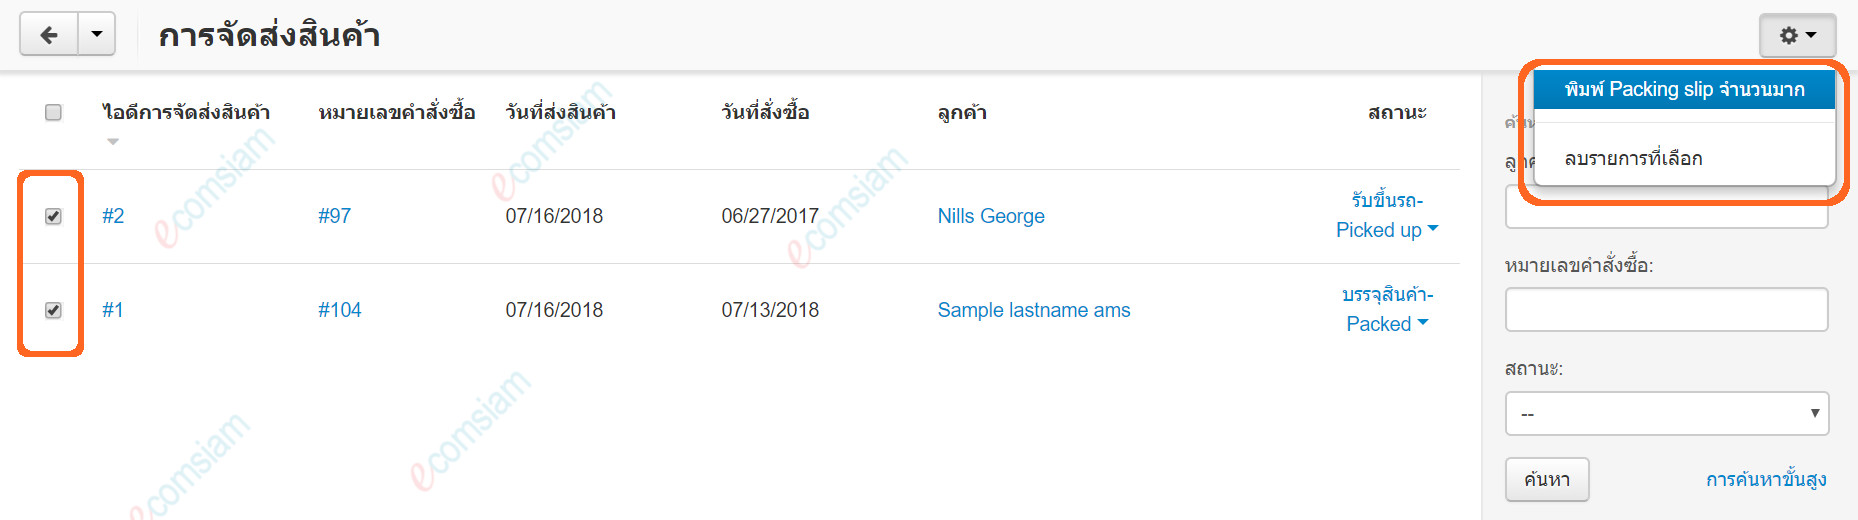 เว็บไซต์สำเร็จรูปไทย - คู่มือร้านออนไลน์ - คำสั่งซื้อ - พิมพ์เอกสารการจัดส่ง packing slips